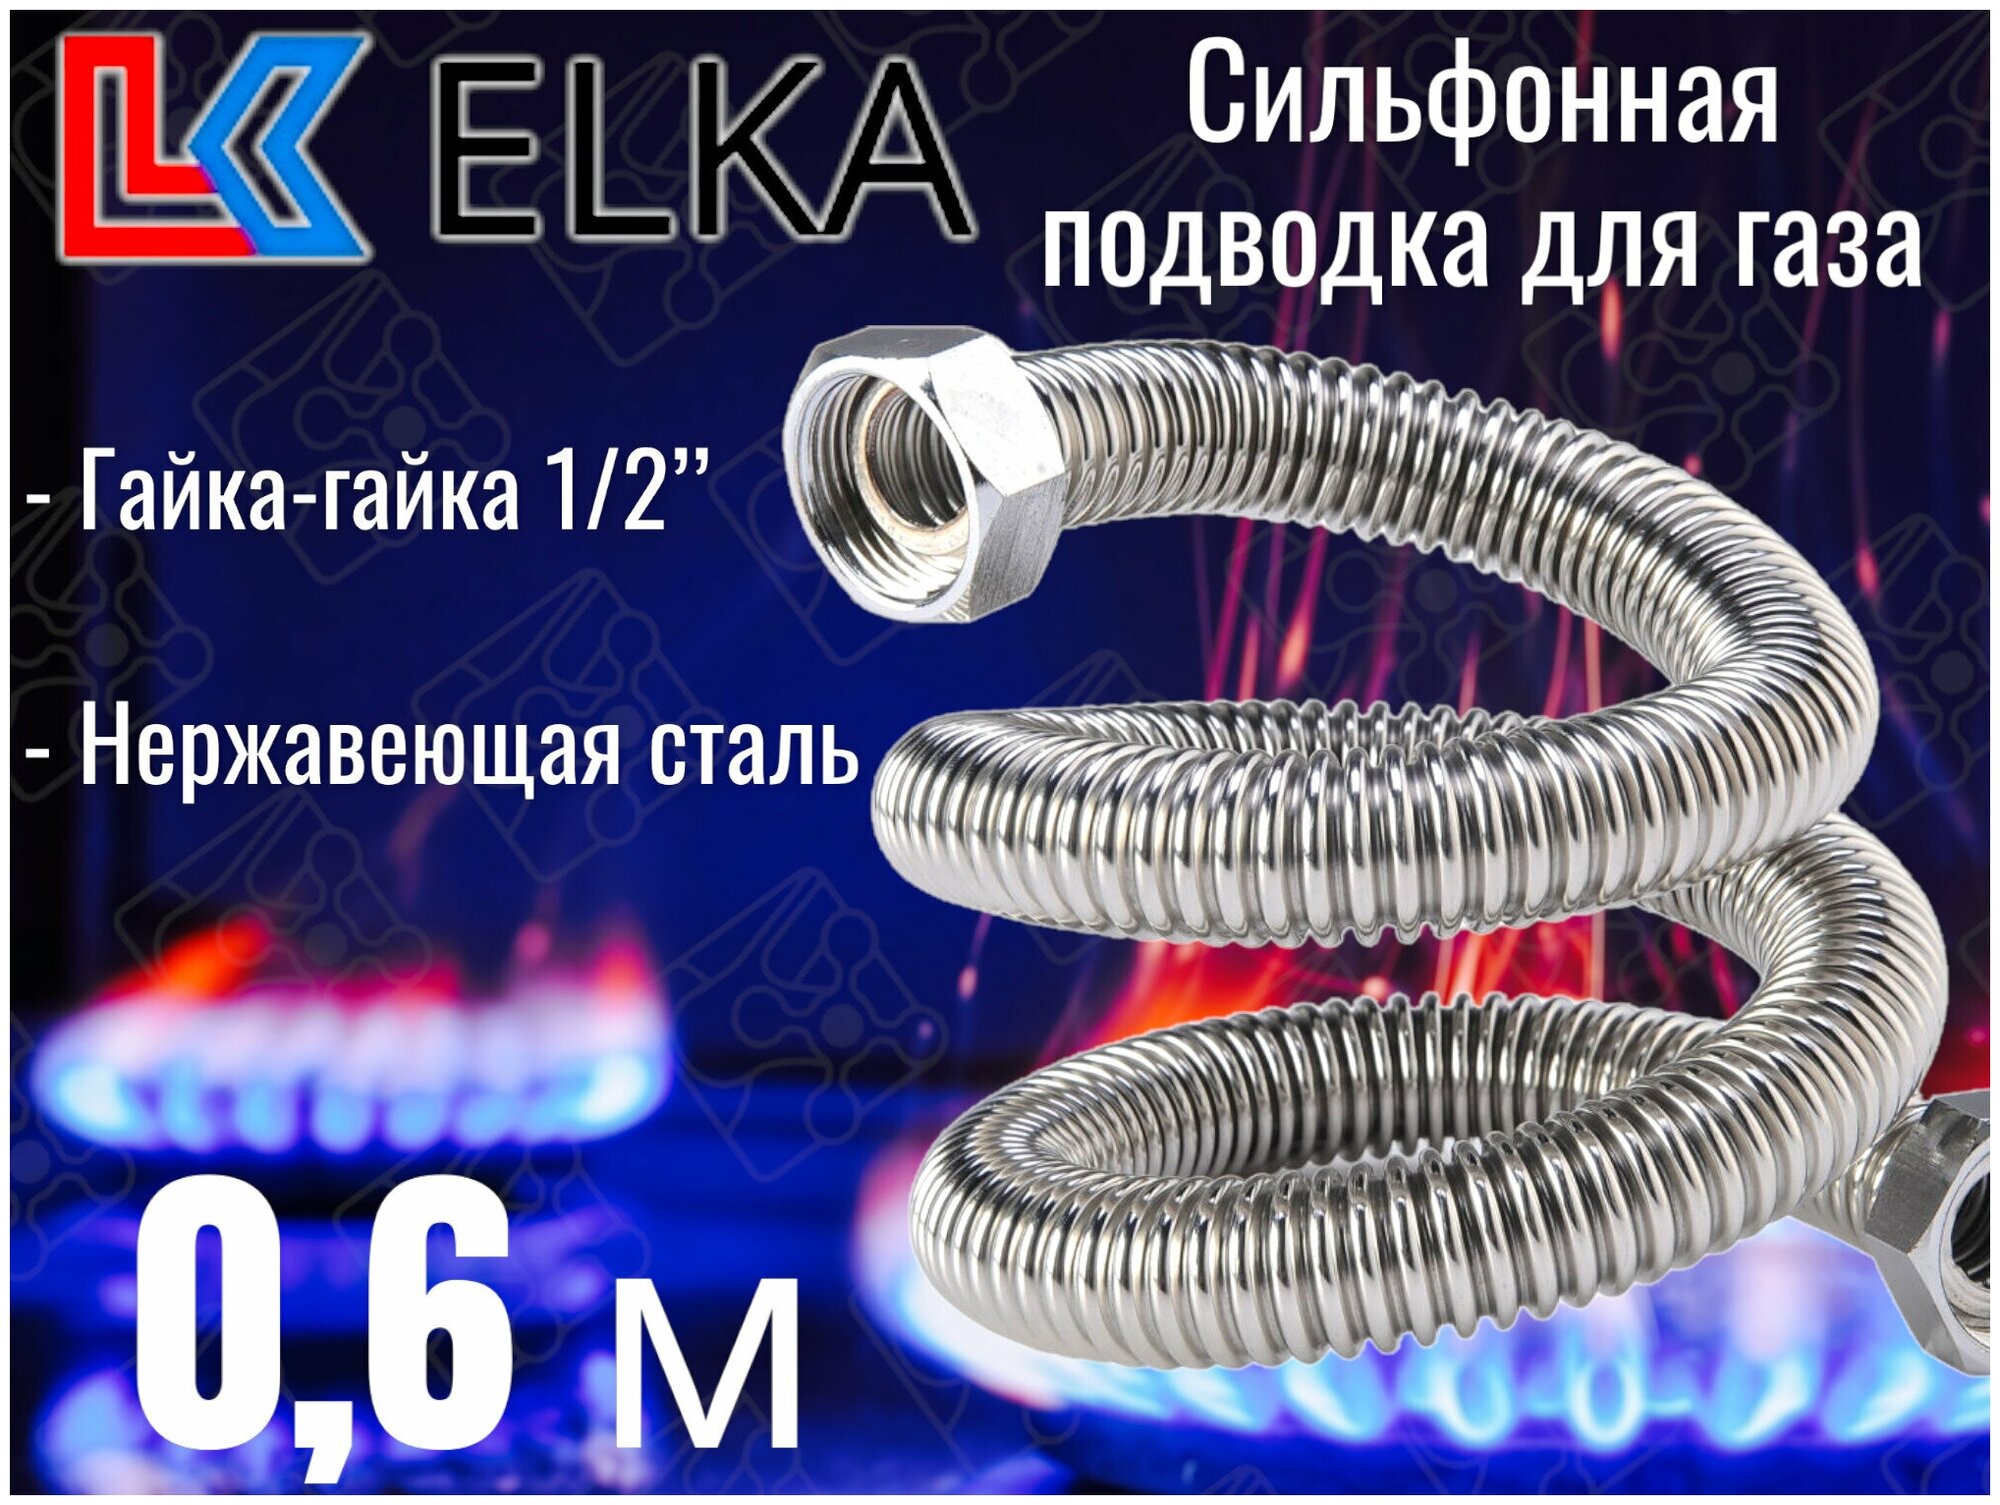 Сильфонная подводка для газа 0,6 м ELKA 1/2" г/г (в/в) / Шланг газовый / Подводка для газовых систем 60 см